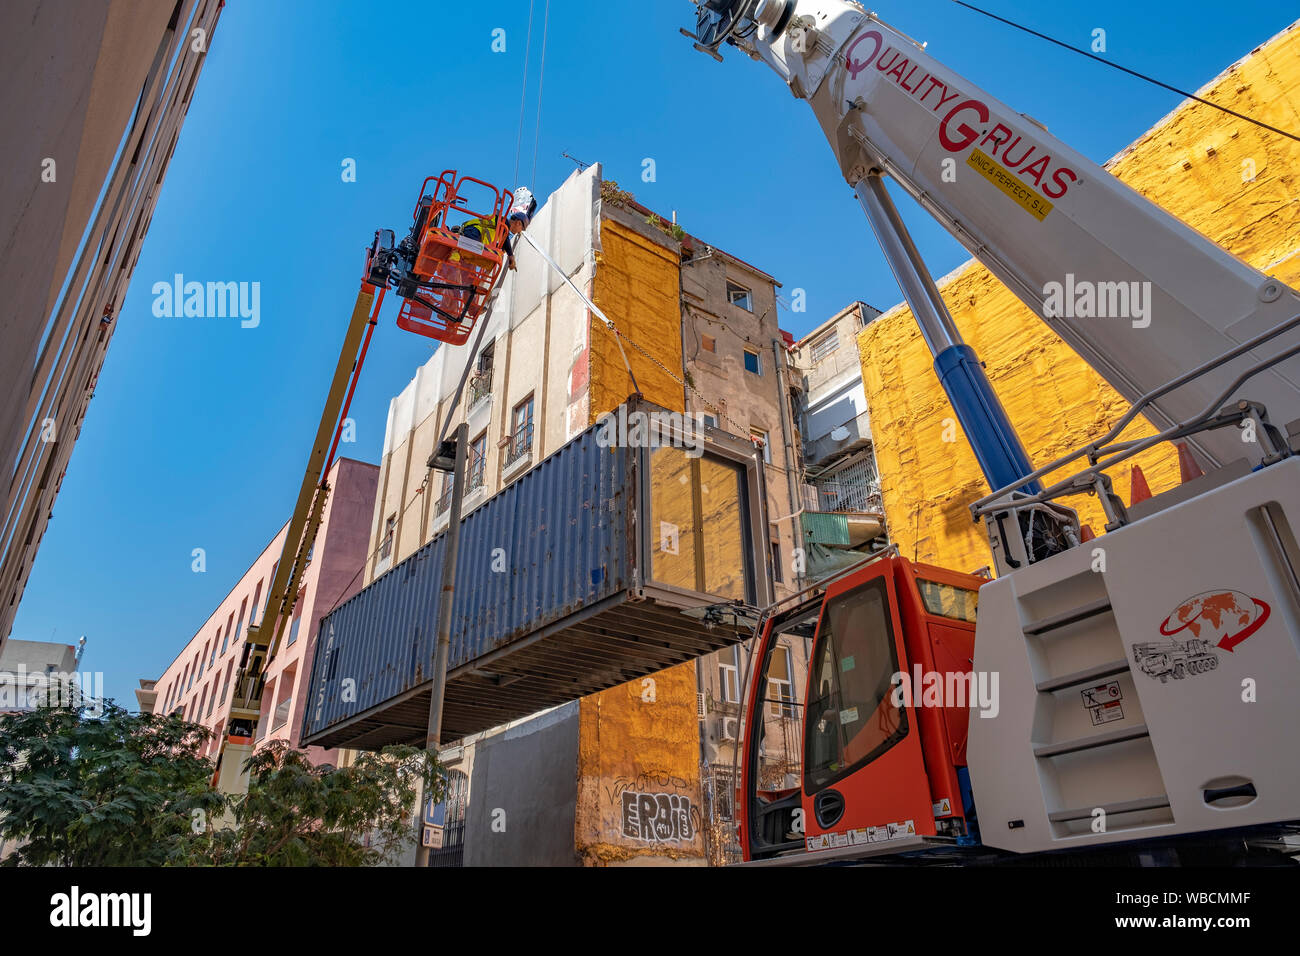 Barcelona, España. 26 Aug, 2019. El primer módulo de vivienda se considera elevada por una grúa.conferencia de prensa la instalación del contenedor del proyecto (APROP) alojamiento temporal para familias